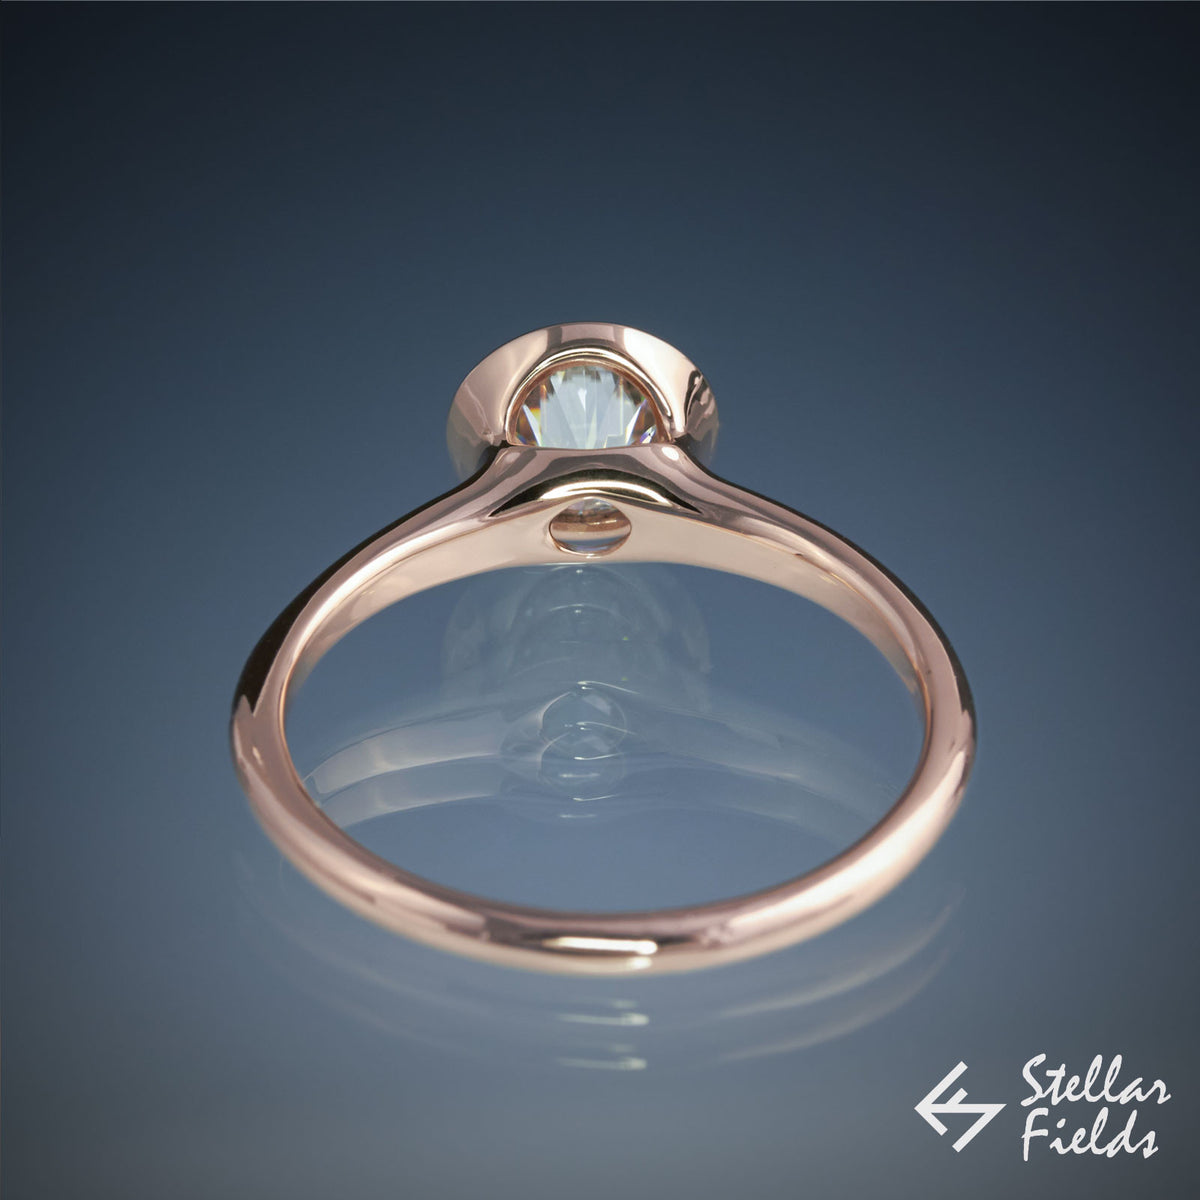 1ct 6.5mm Forever One™ Moissanite Full Bezel Set Engagement Ring - Stellar Fields